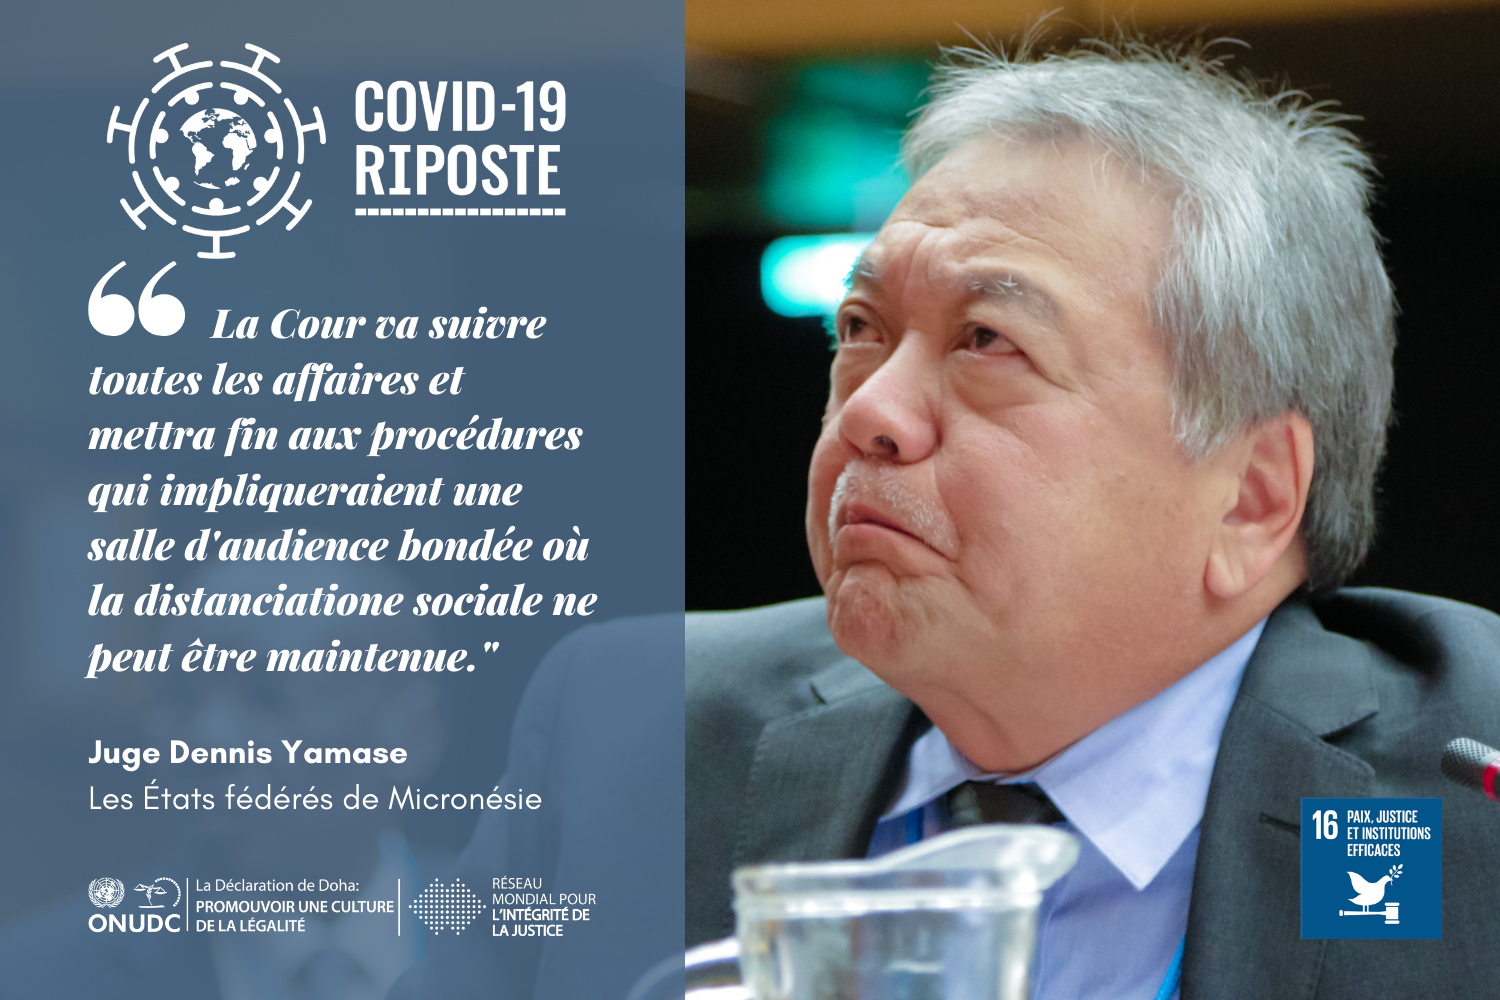 Les efforts de la Cour Suprême pour empêcher la COVID-19 d'entrer dans les États fédérés de Micronésie